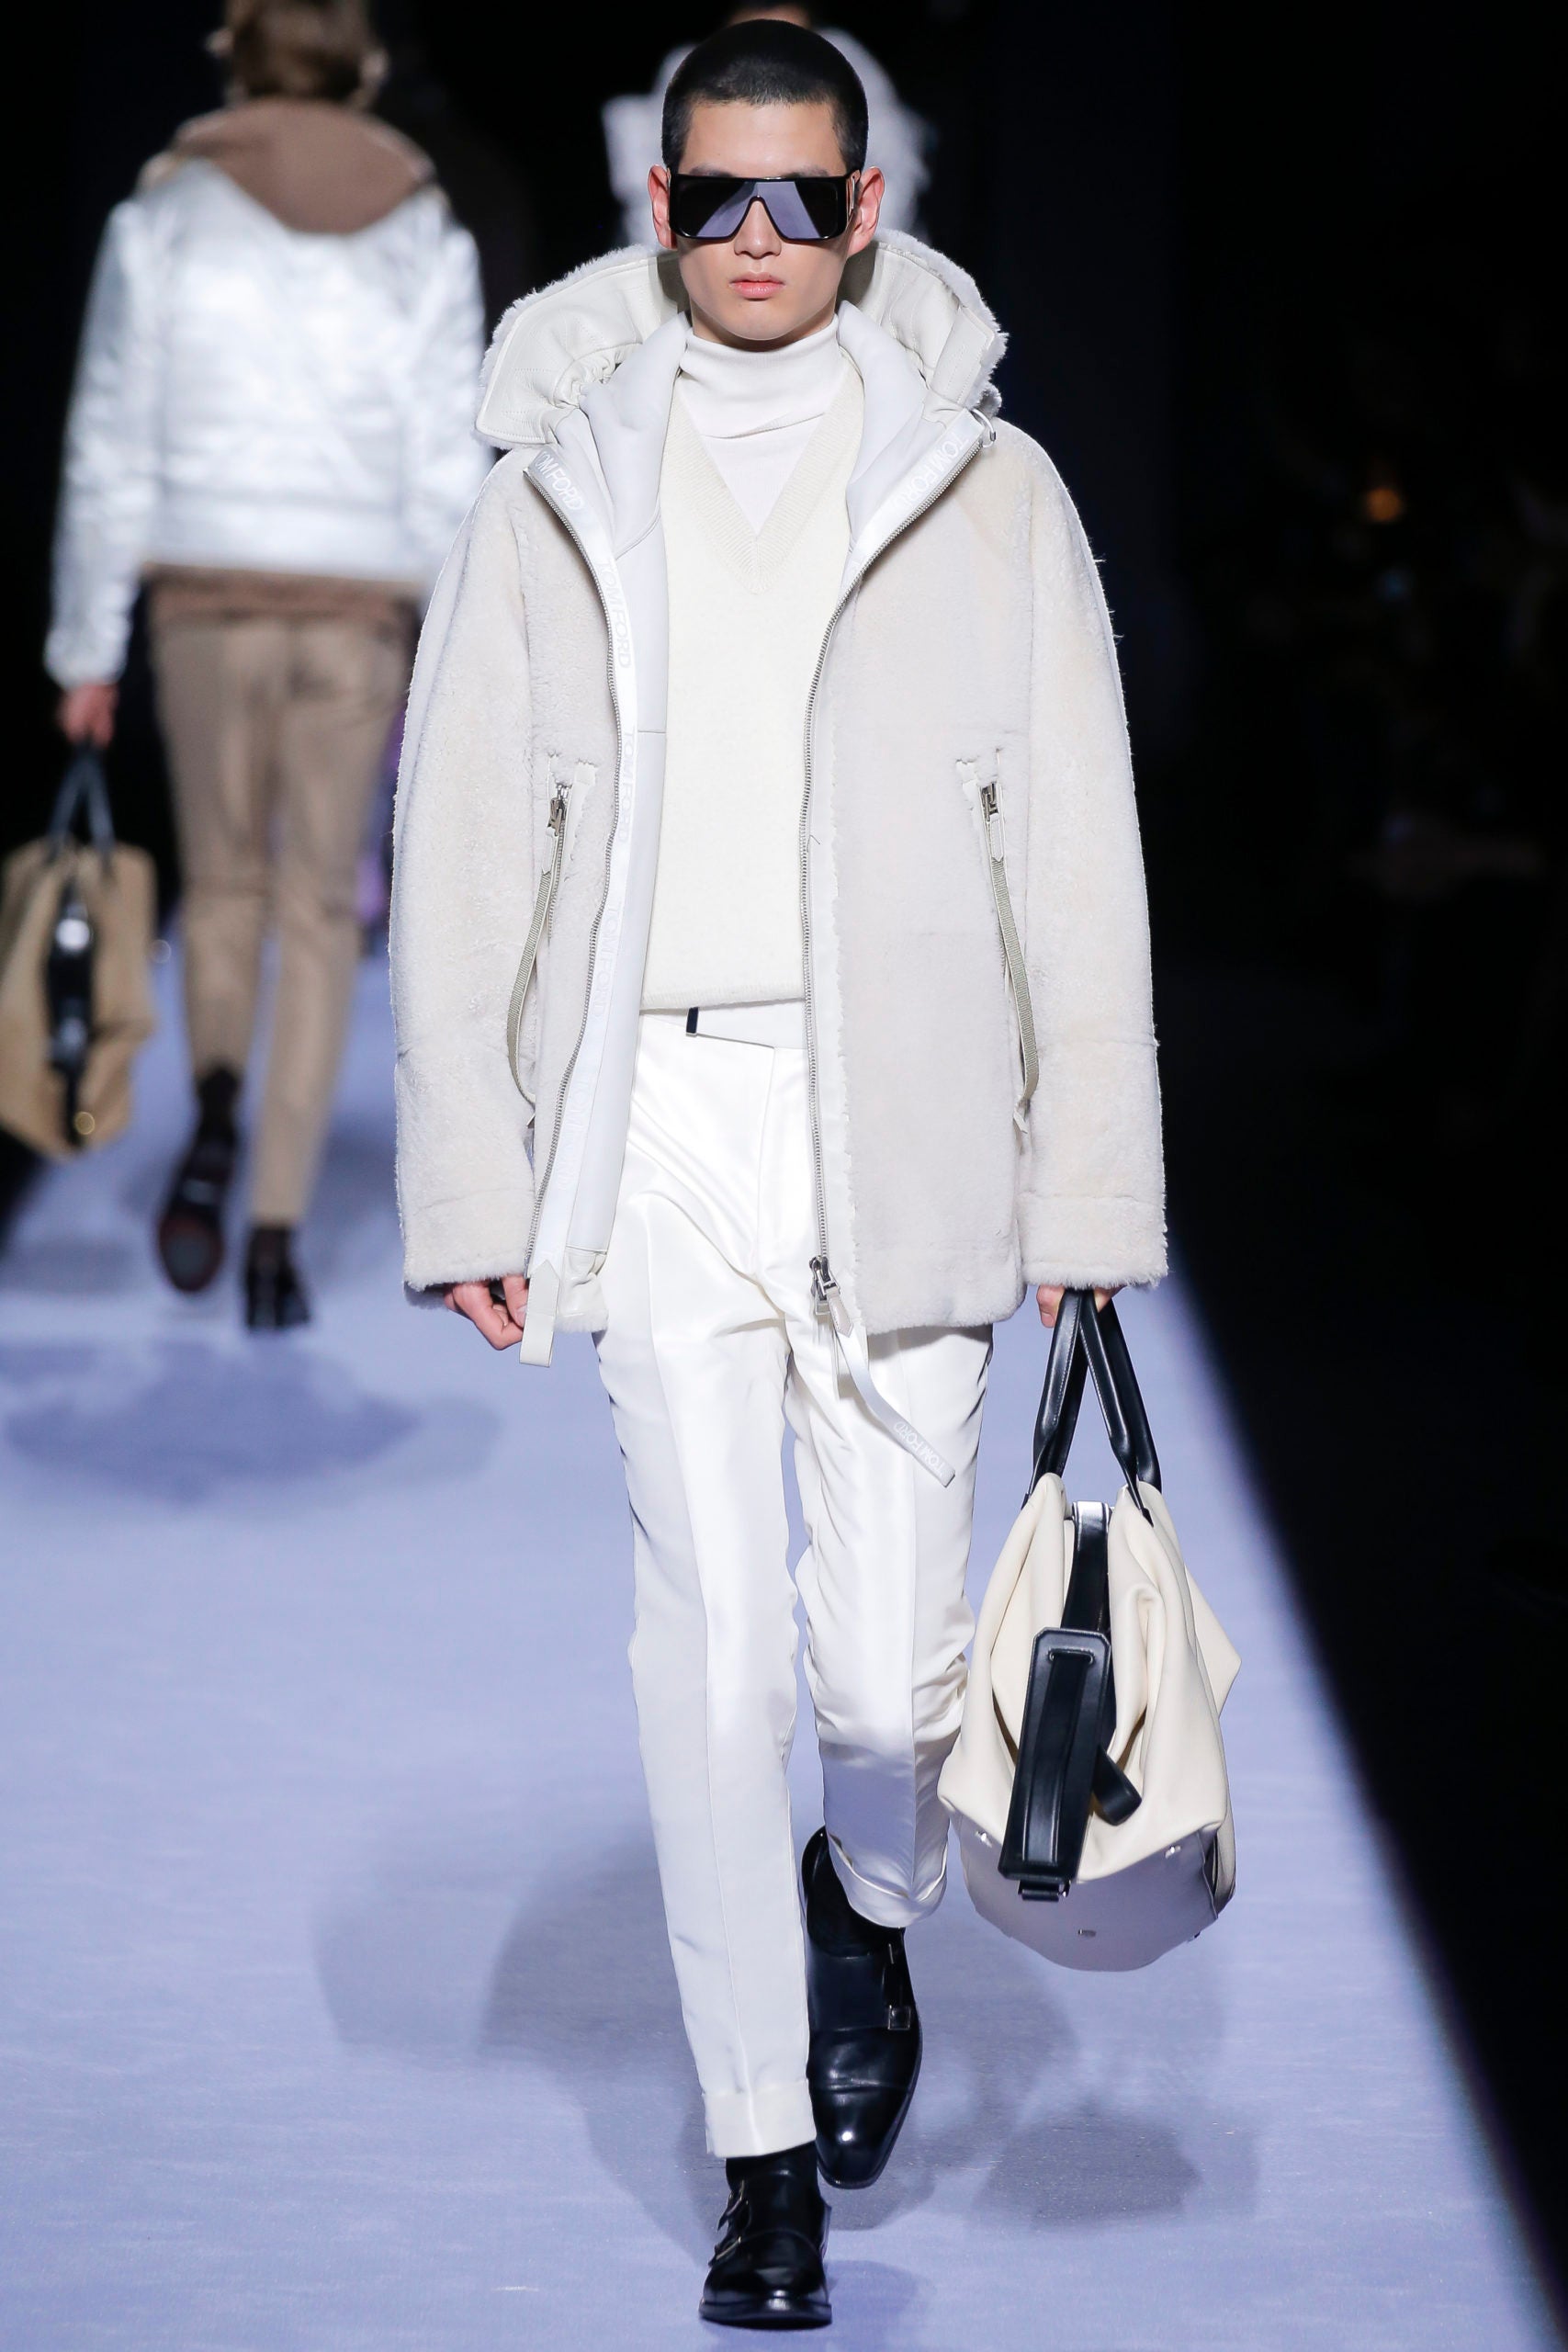 Winter Whites in this Season's Menswear - Elite Traveler